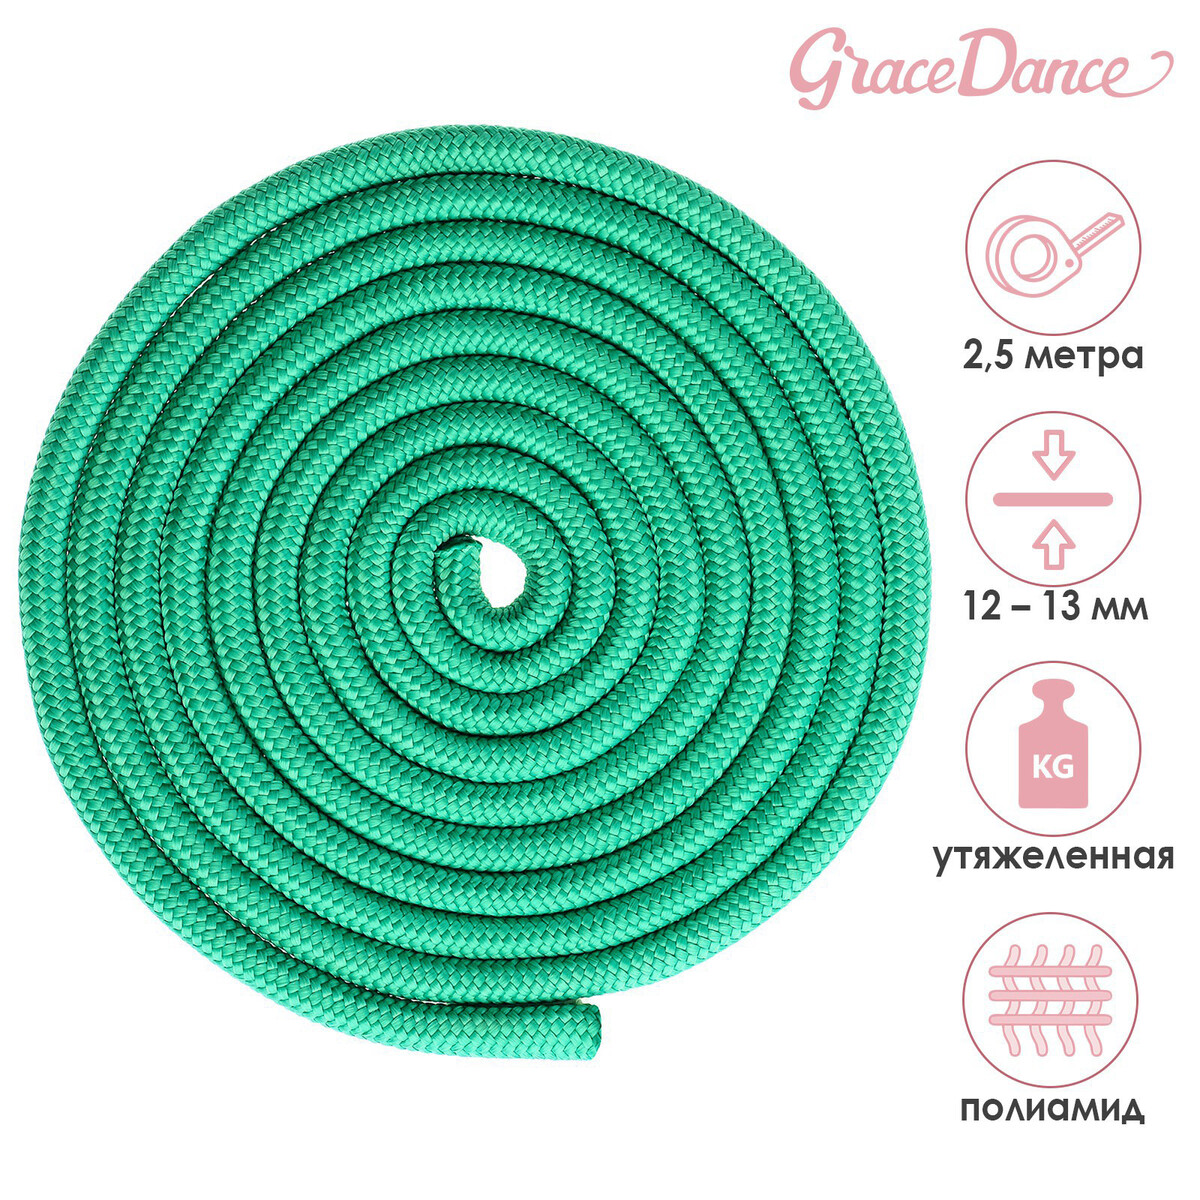 Скакалка для художественной гимнастики утяжеленная grace dance, 2,5 м, цвет зеленый скакалка для художественной гимнастики утяжеленная grace dance 2 5 м желтый